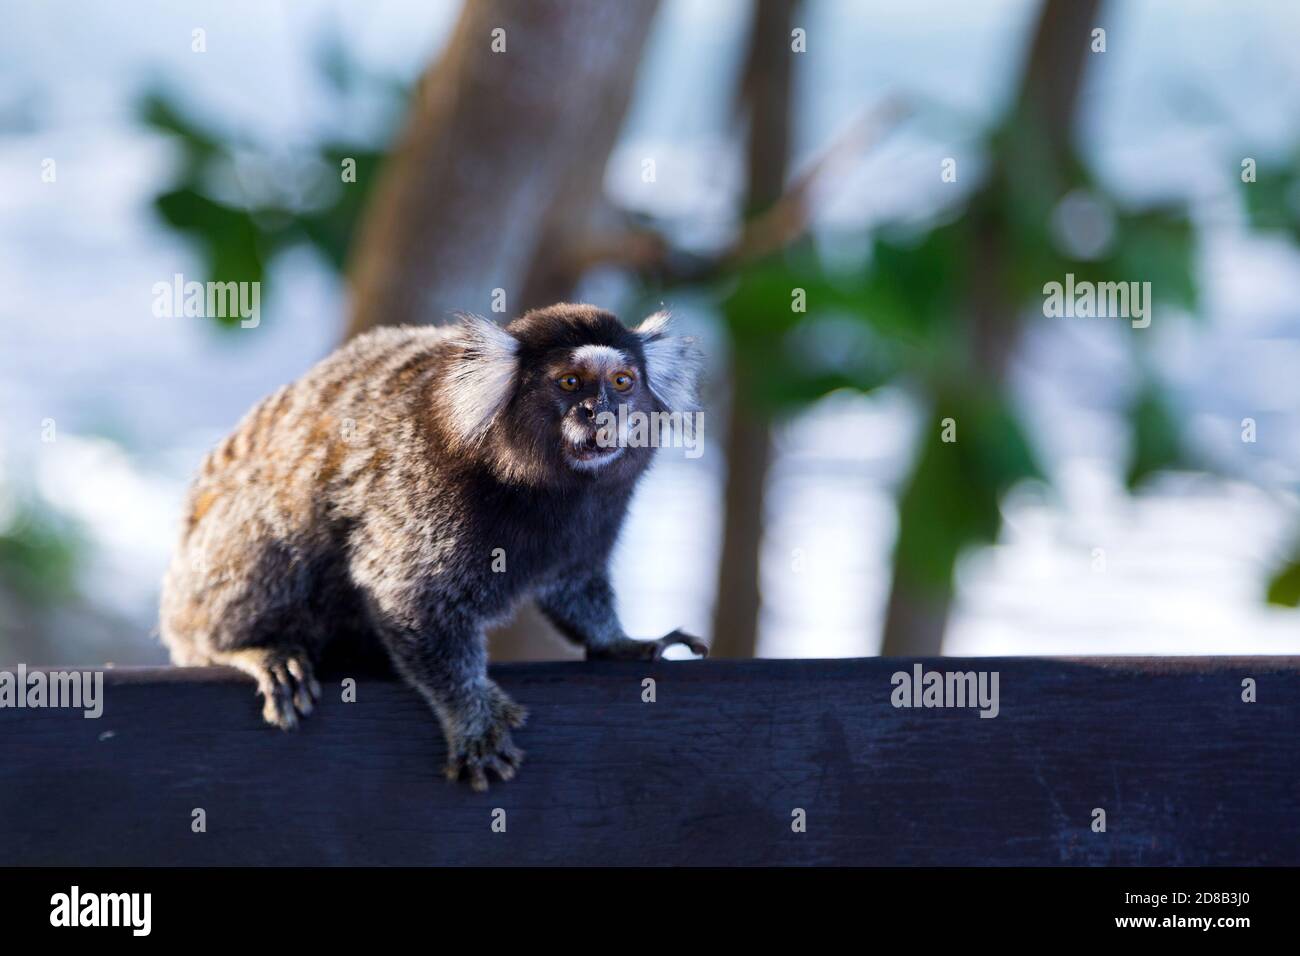 Macaco titi brasileiro callithrix jacchus natural do rio de